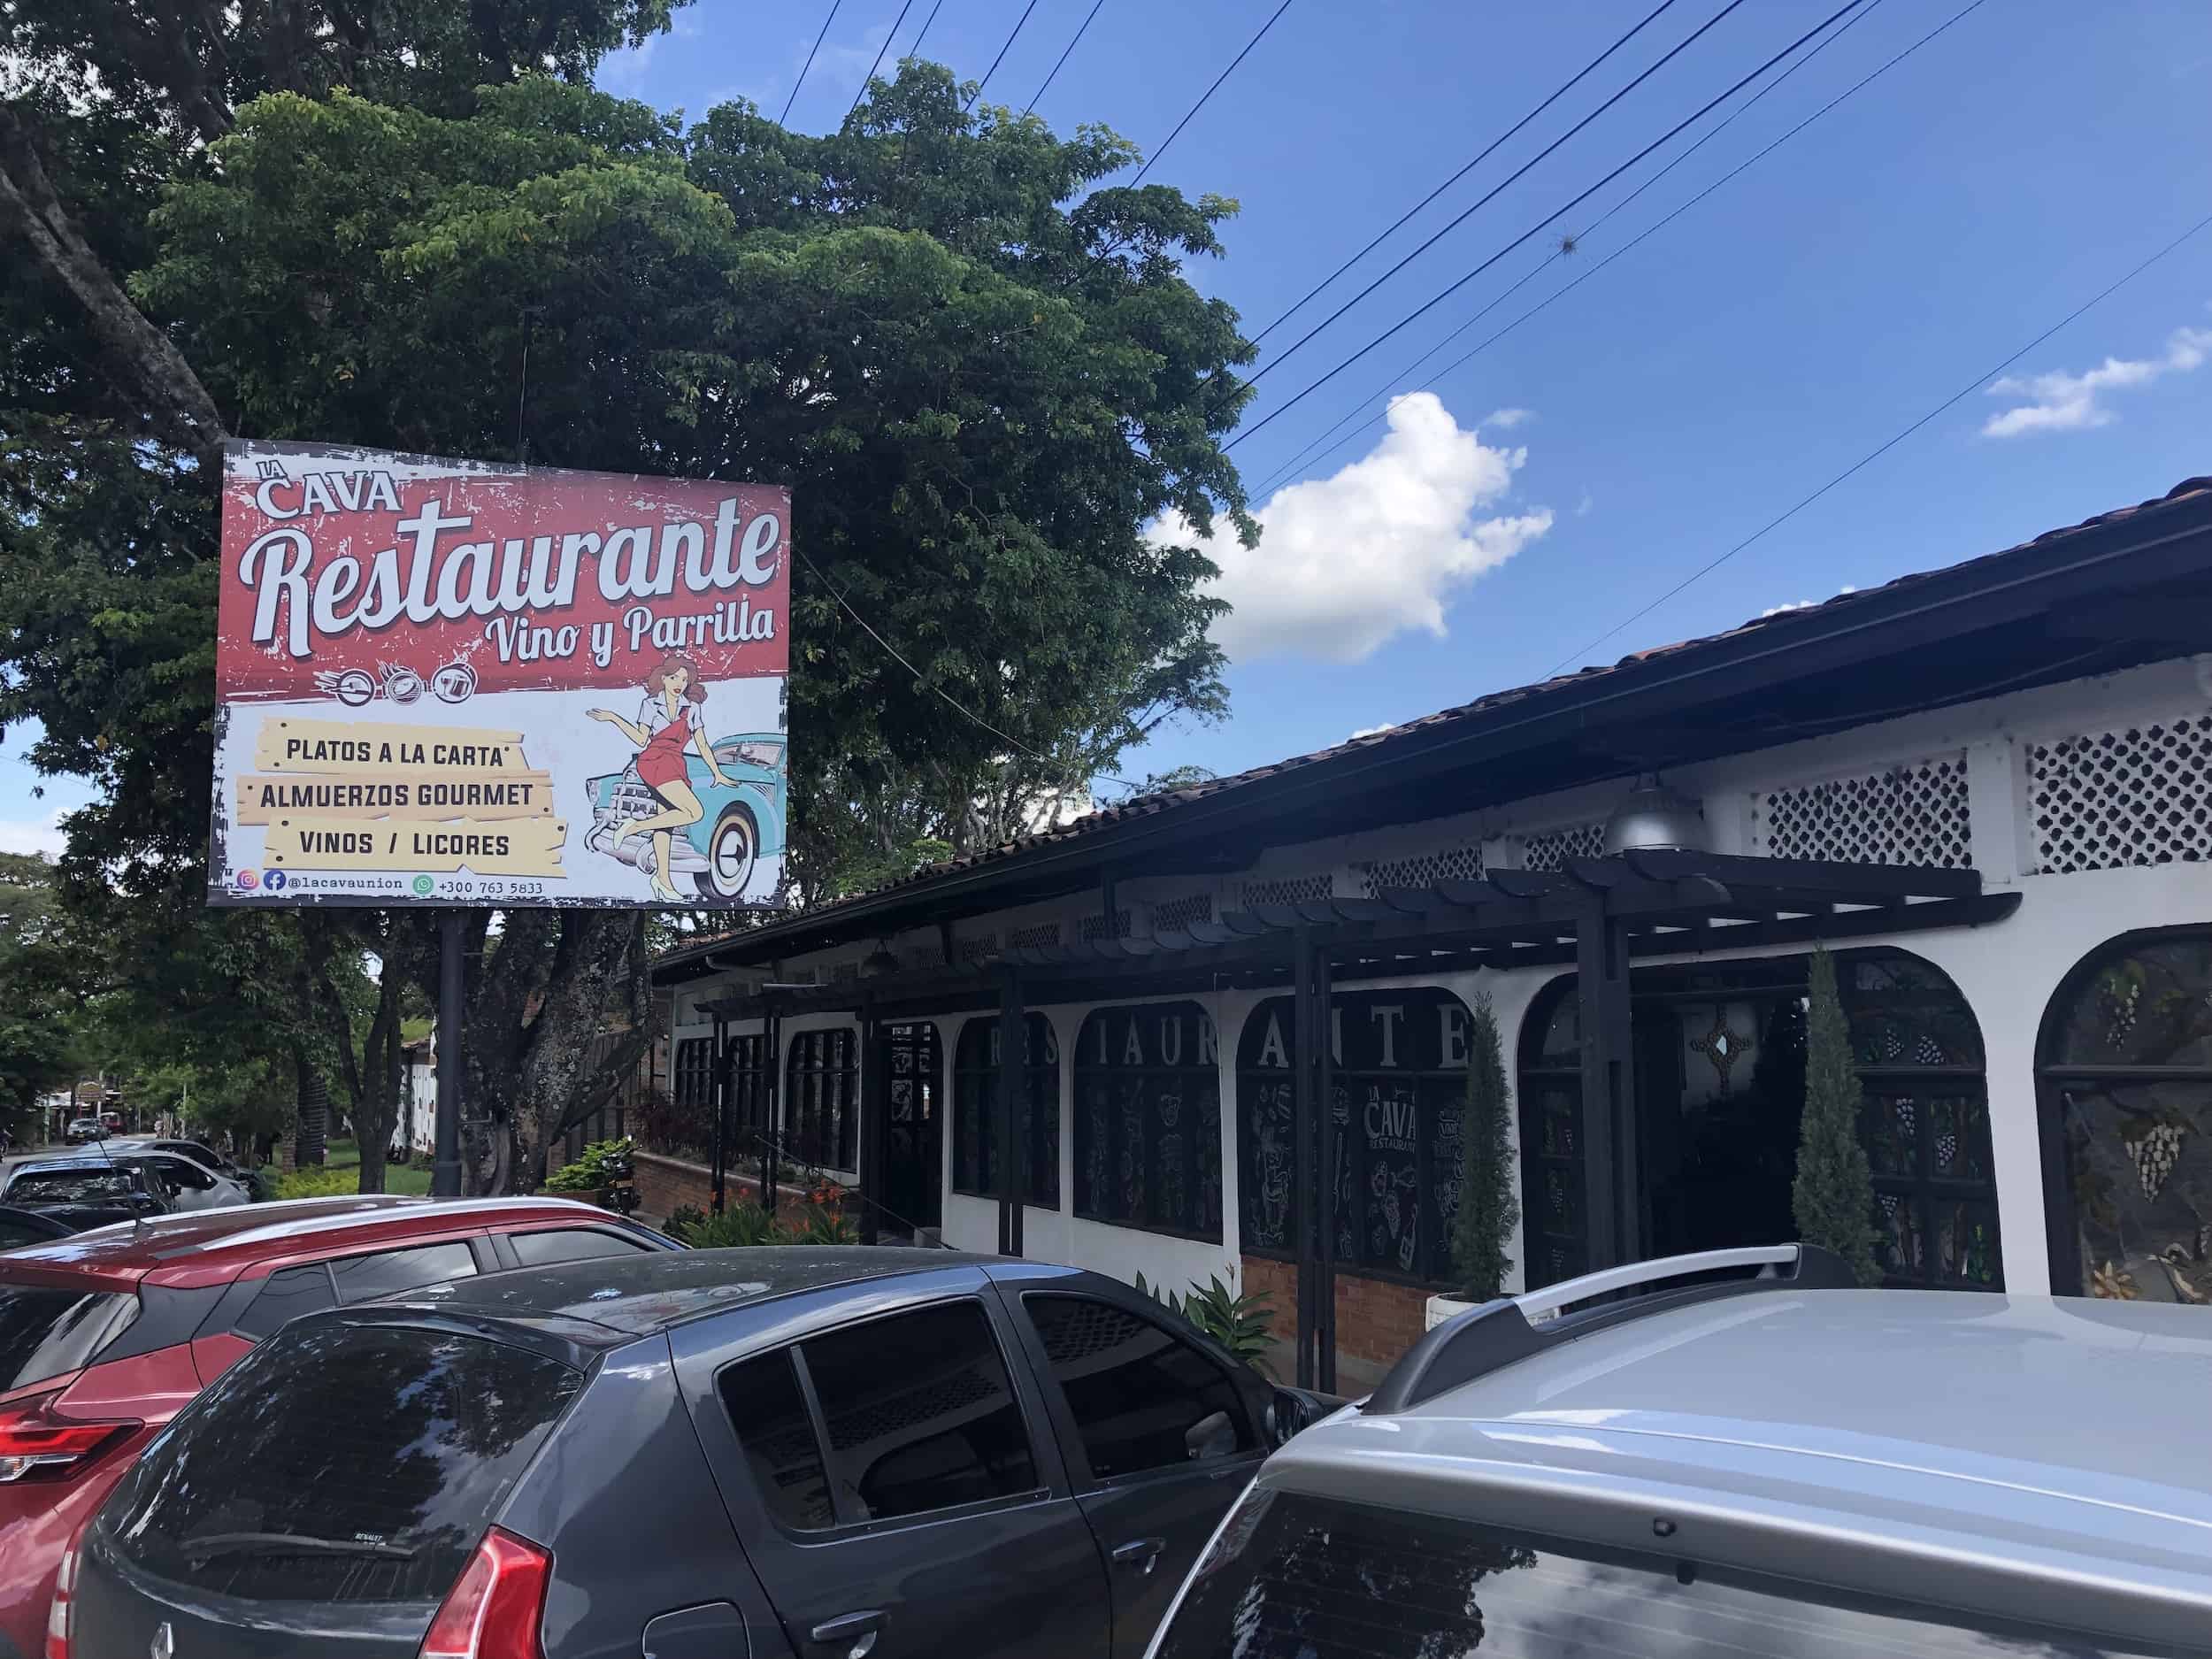 La Cava Restaurante in La Unión, Valle del Cauca, Colombia